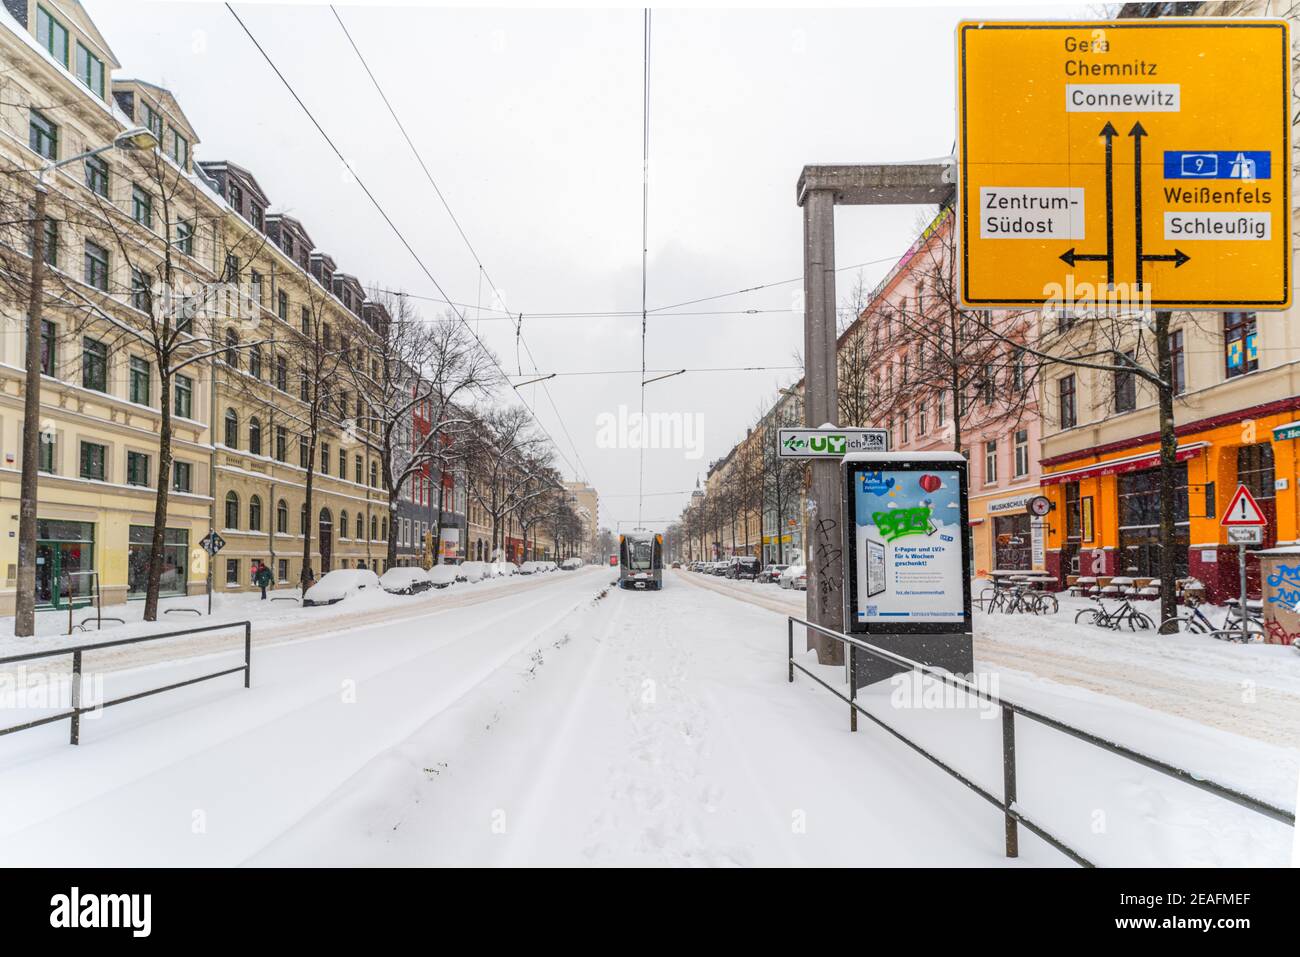 Wintereinbruch Februar 2021; Schnee in Leipzig, Winter 2021, Schneemassen auf den Straßen, Stillstand des Verkehrs und kein Winterdienst Stock Photo